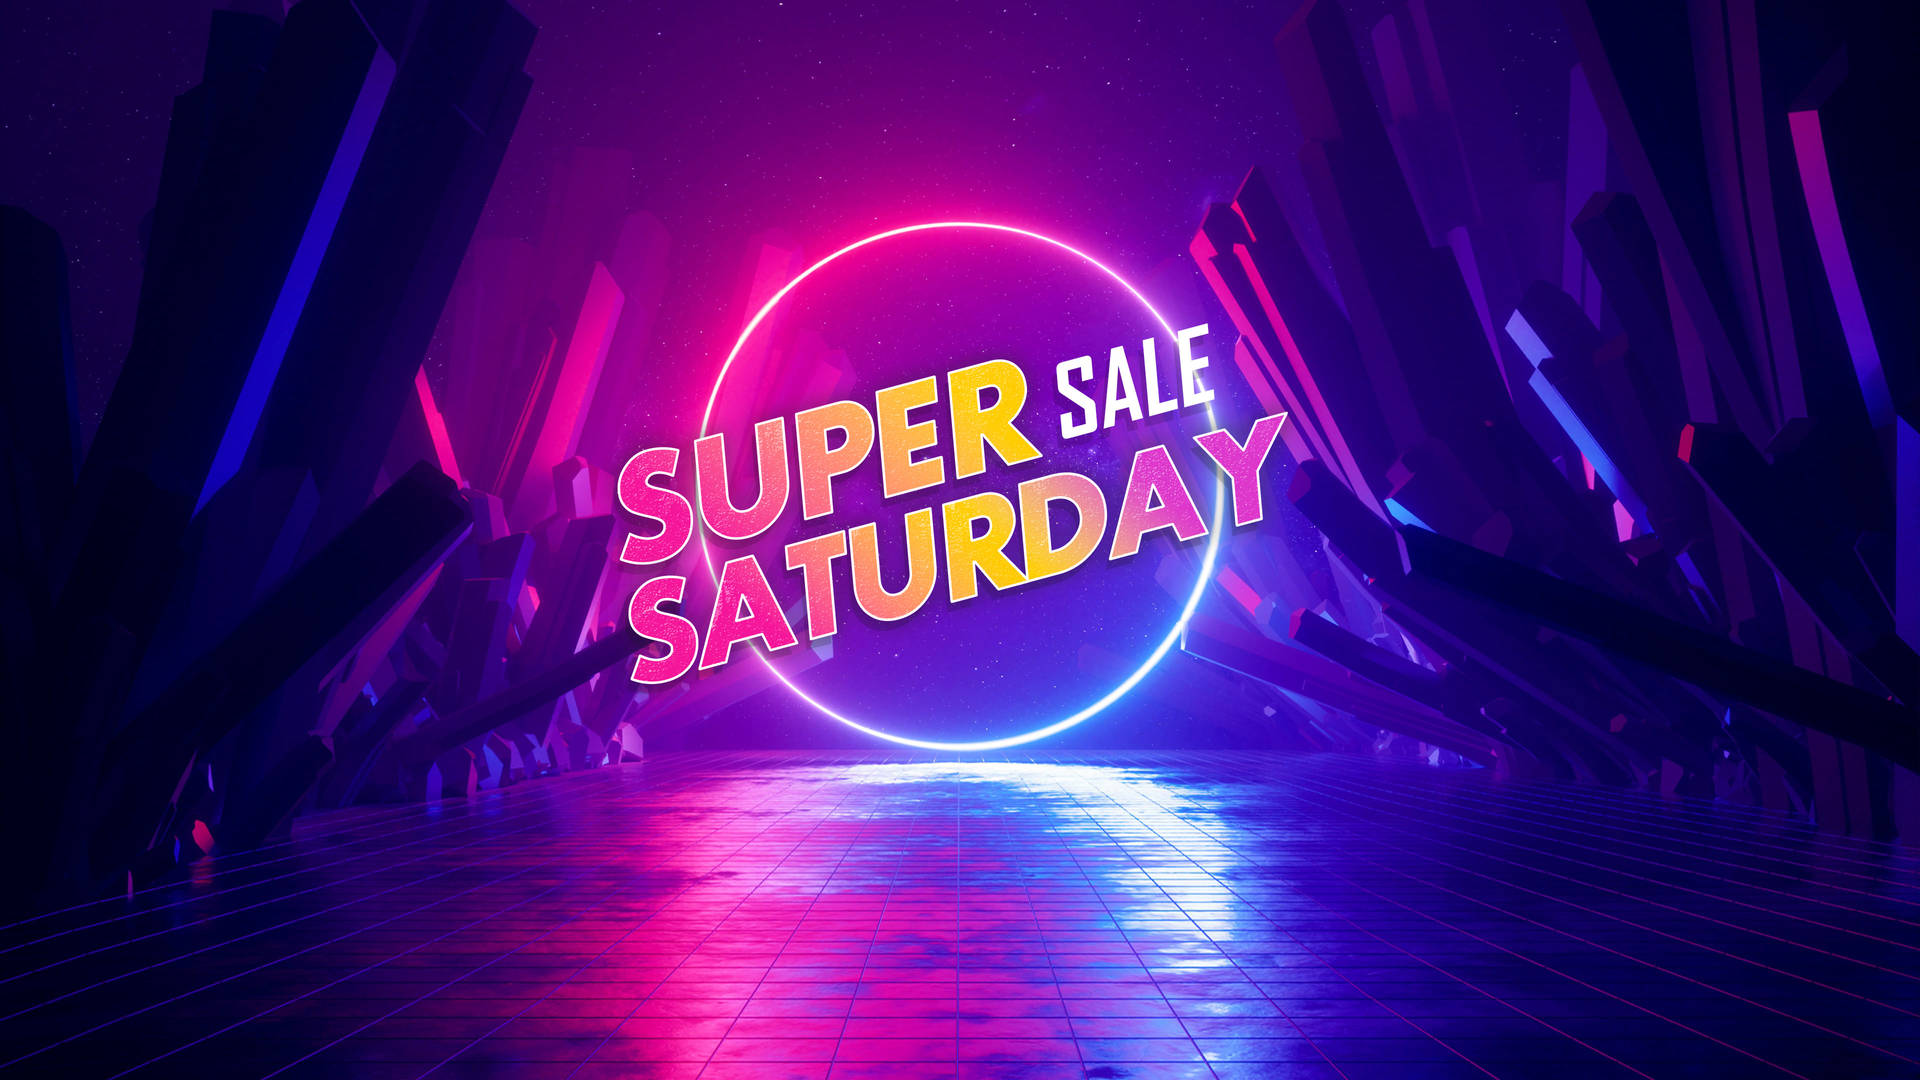 Glowing Super Saturday Sale